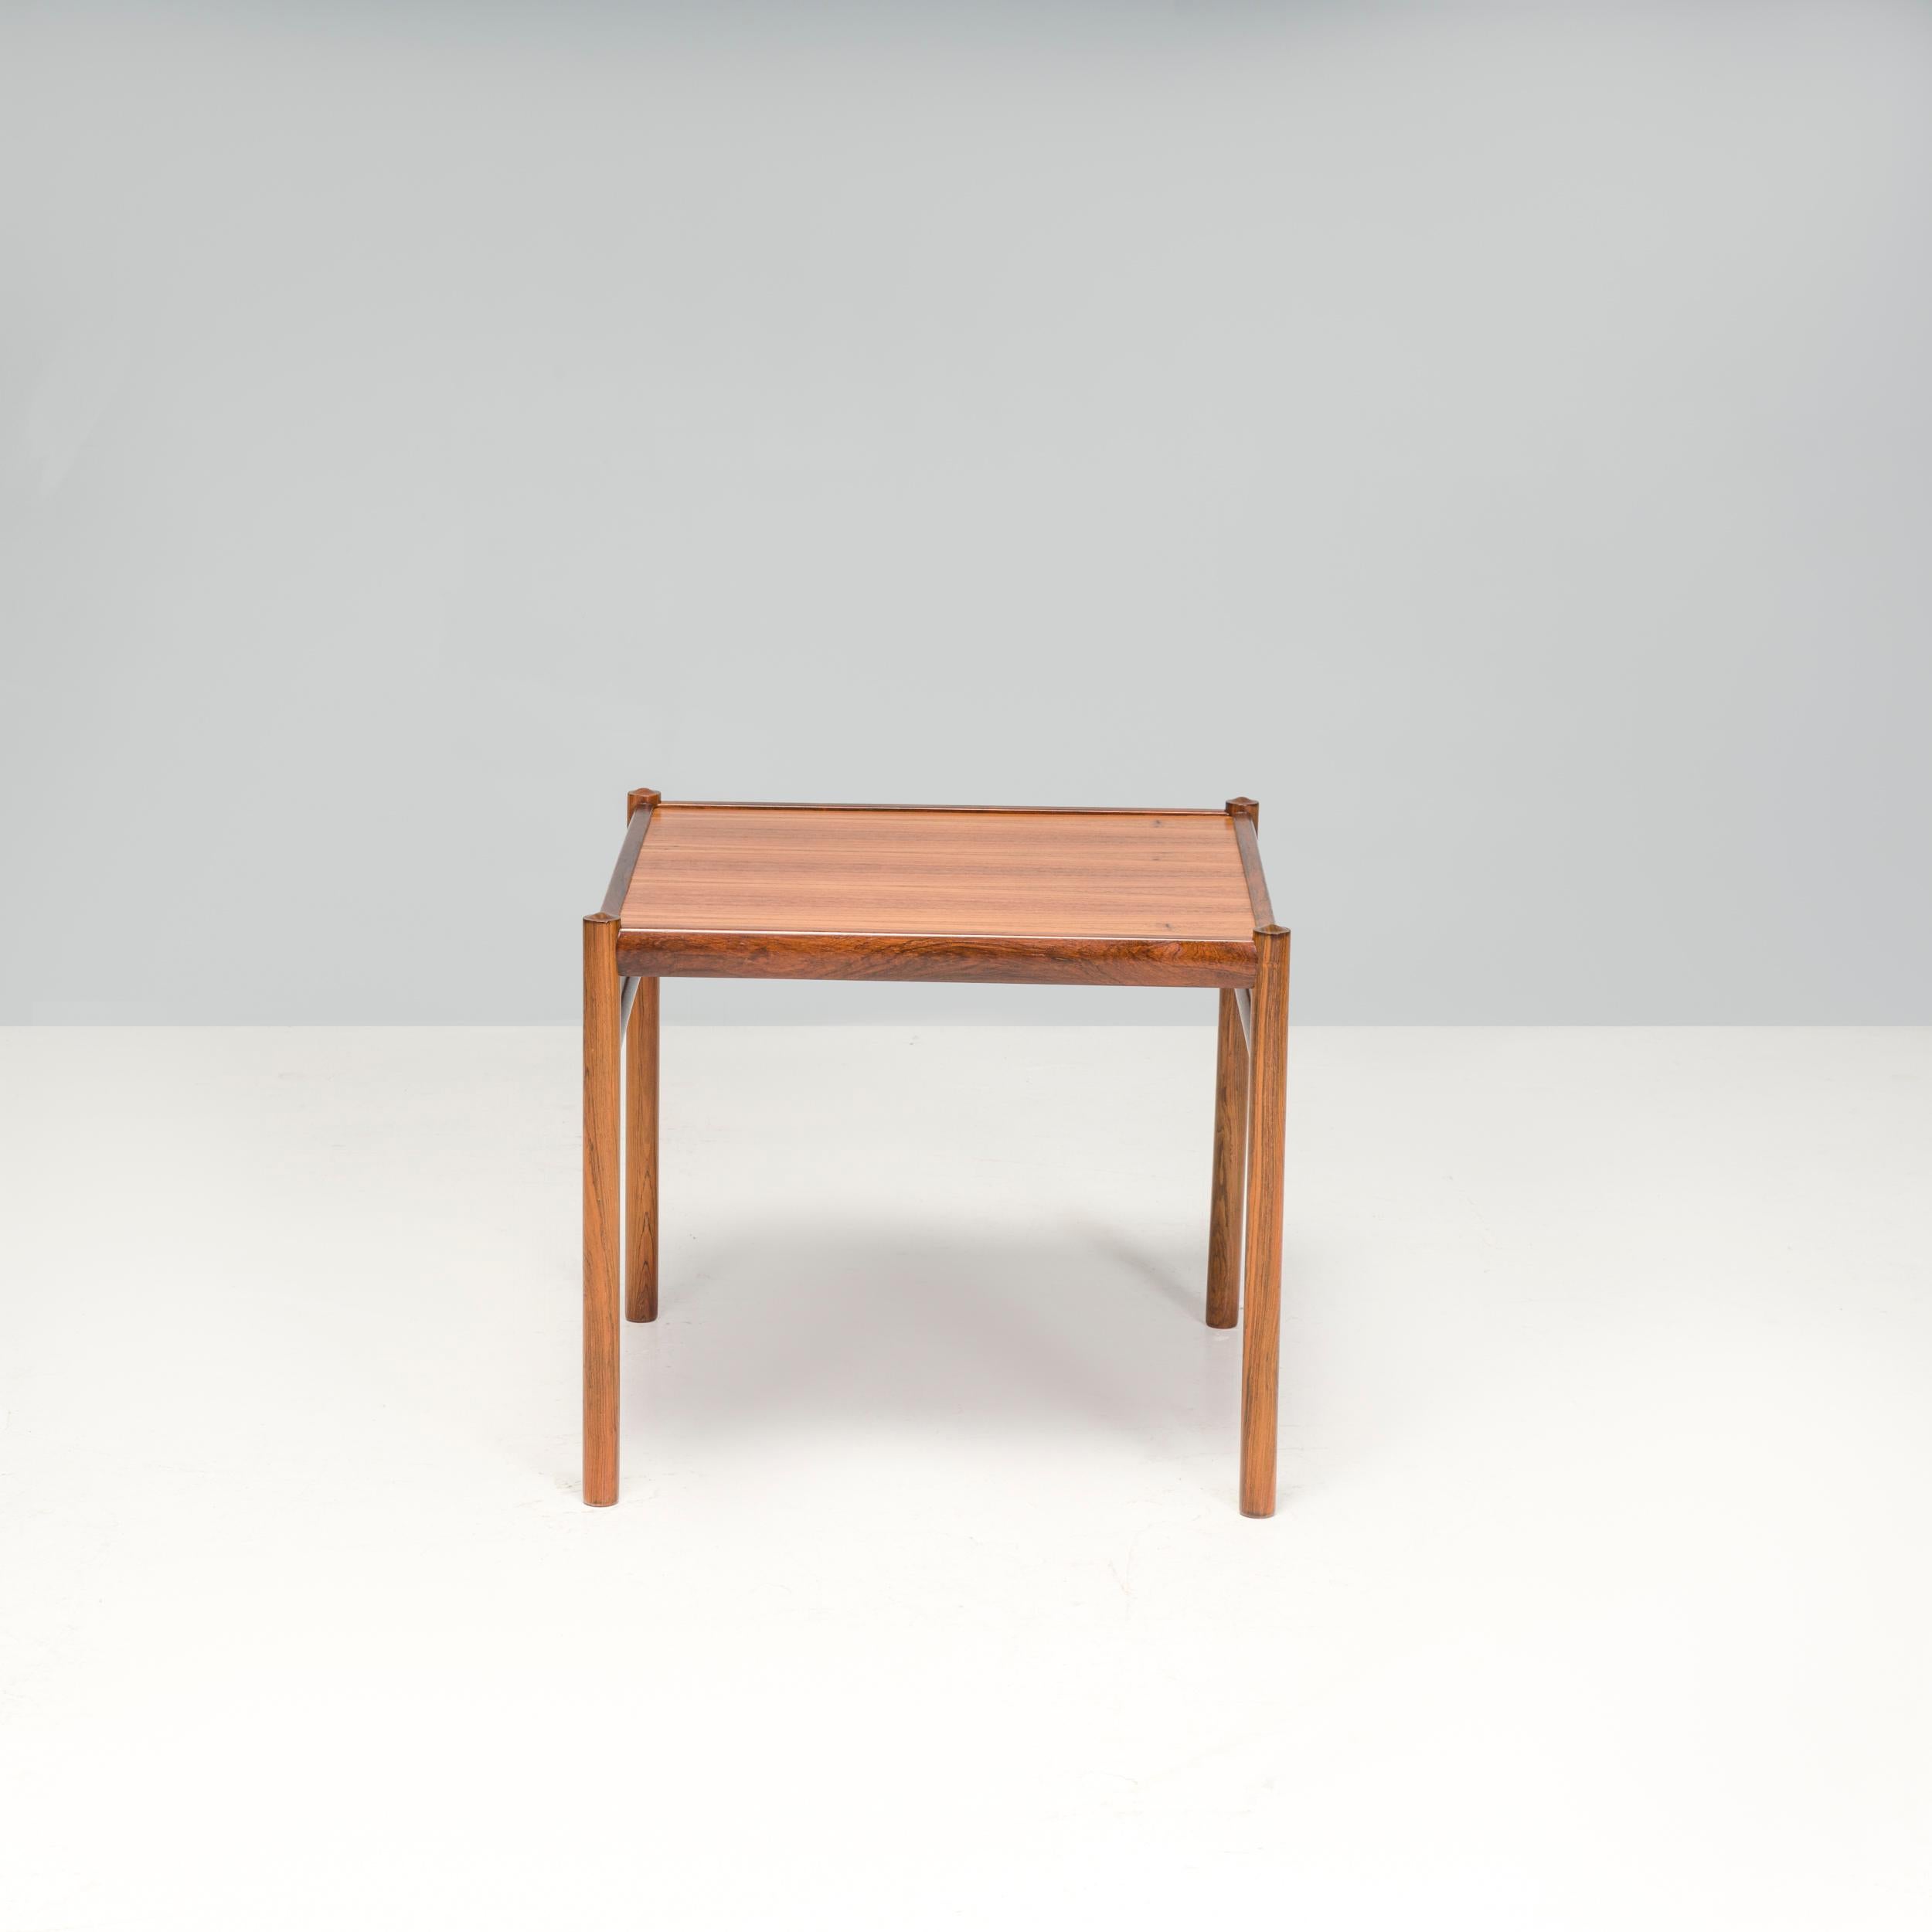 Der Colonial Coffee Table, den Ole Wanscher 1964 entworfen hat. Das schlichte, zeitlose Design des Beistelltisches unterstützt den visuellen Ausdruck der Colonial Series und bildet einen harmonischen Mittelpunkt für die gesamte Serie.

Wanschers